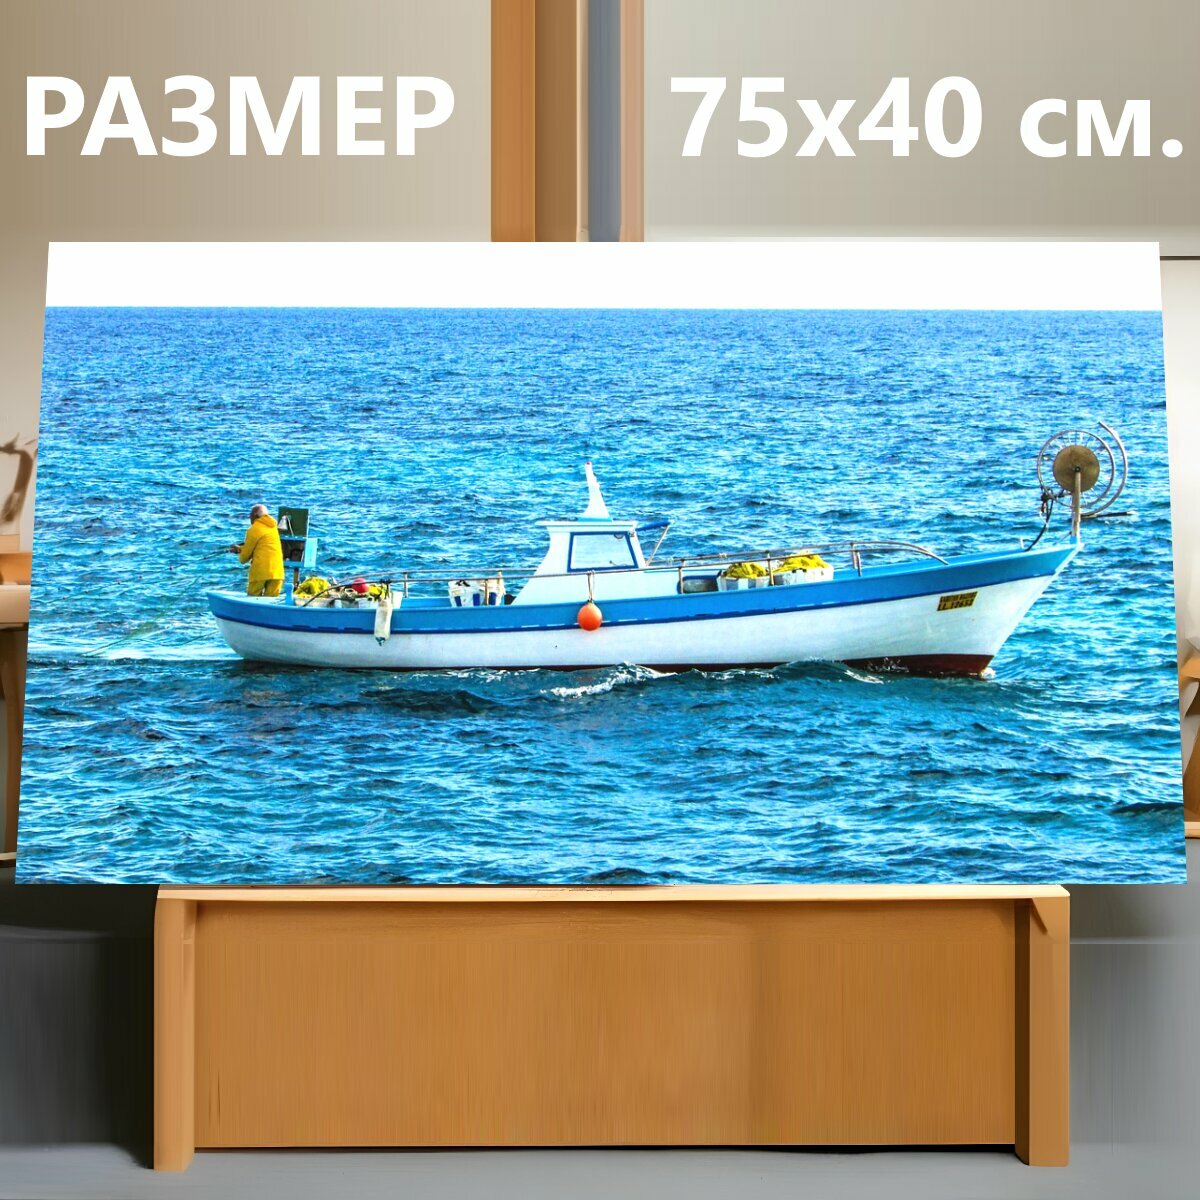 Картина на холсте "Ловит рыбу, рыболовная лодка, лодка" на подрамнике 75х40 см. для интерьера